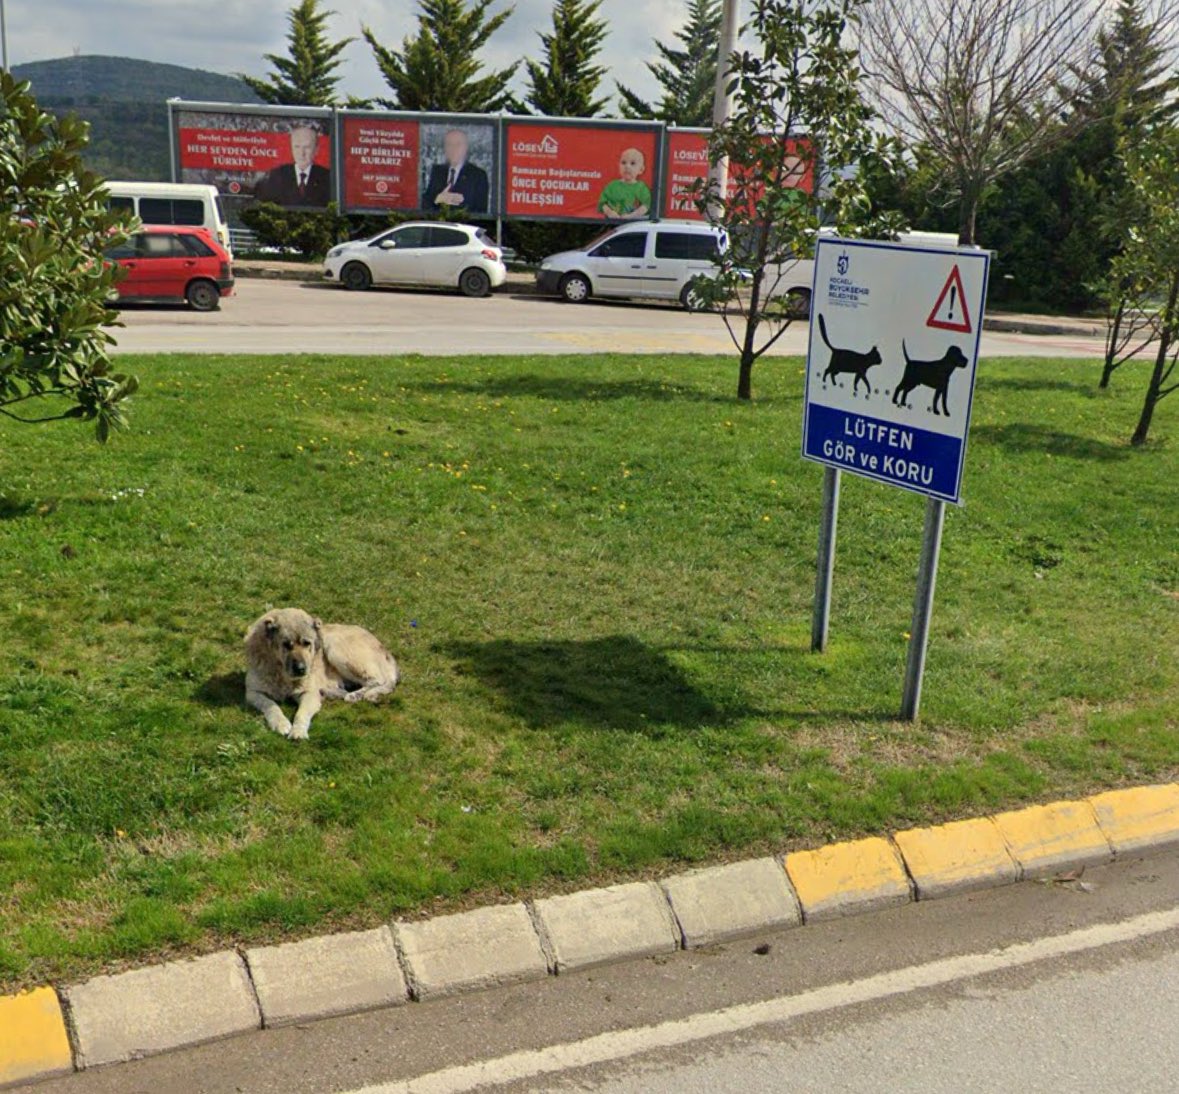 Kocaeli Üniversitesi'nde 'Gör ve Koru' yazan tabelâlar...

Sokak Köpekleri Toplatılsın 

#KampüsteKöpekOlmaz